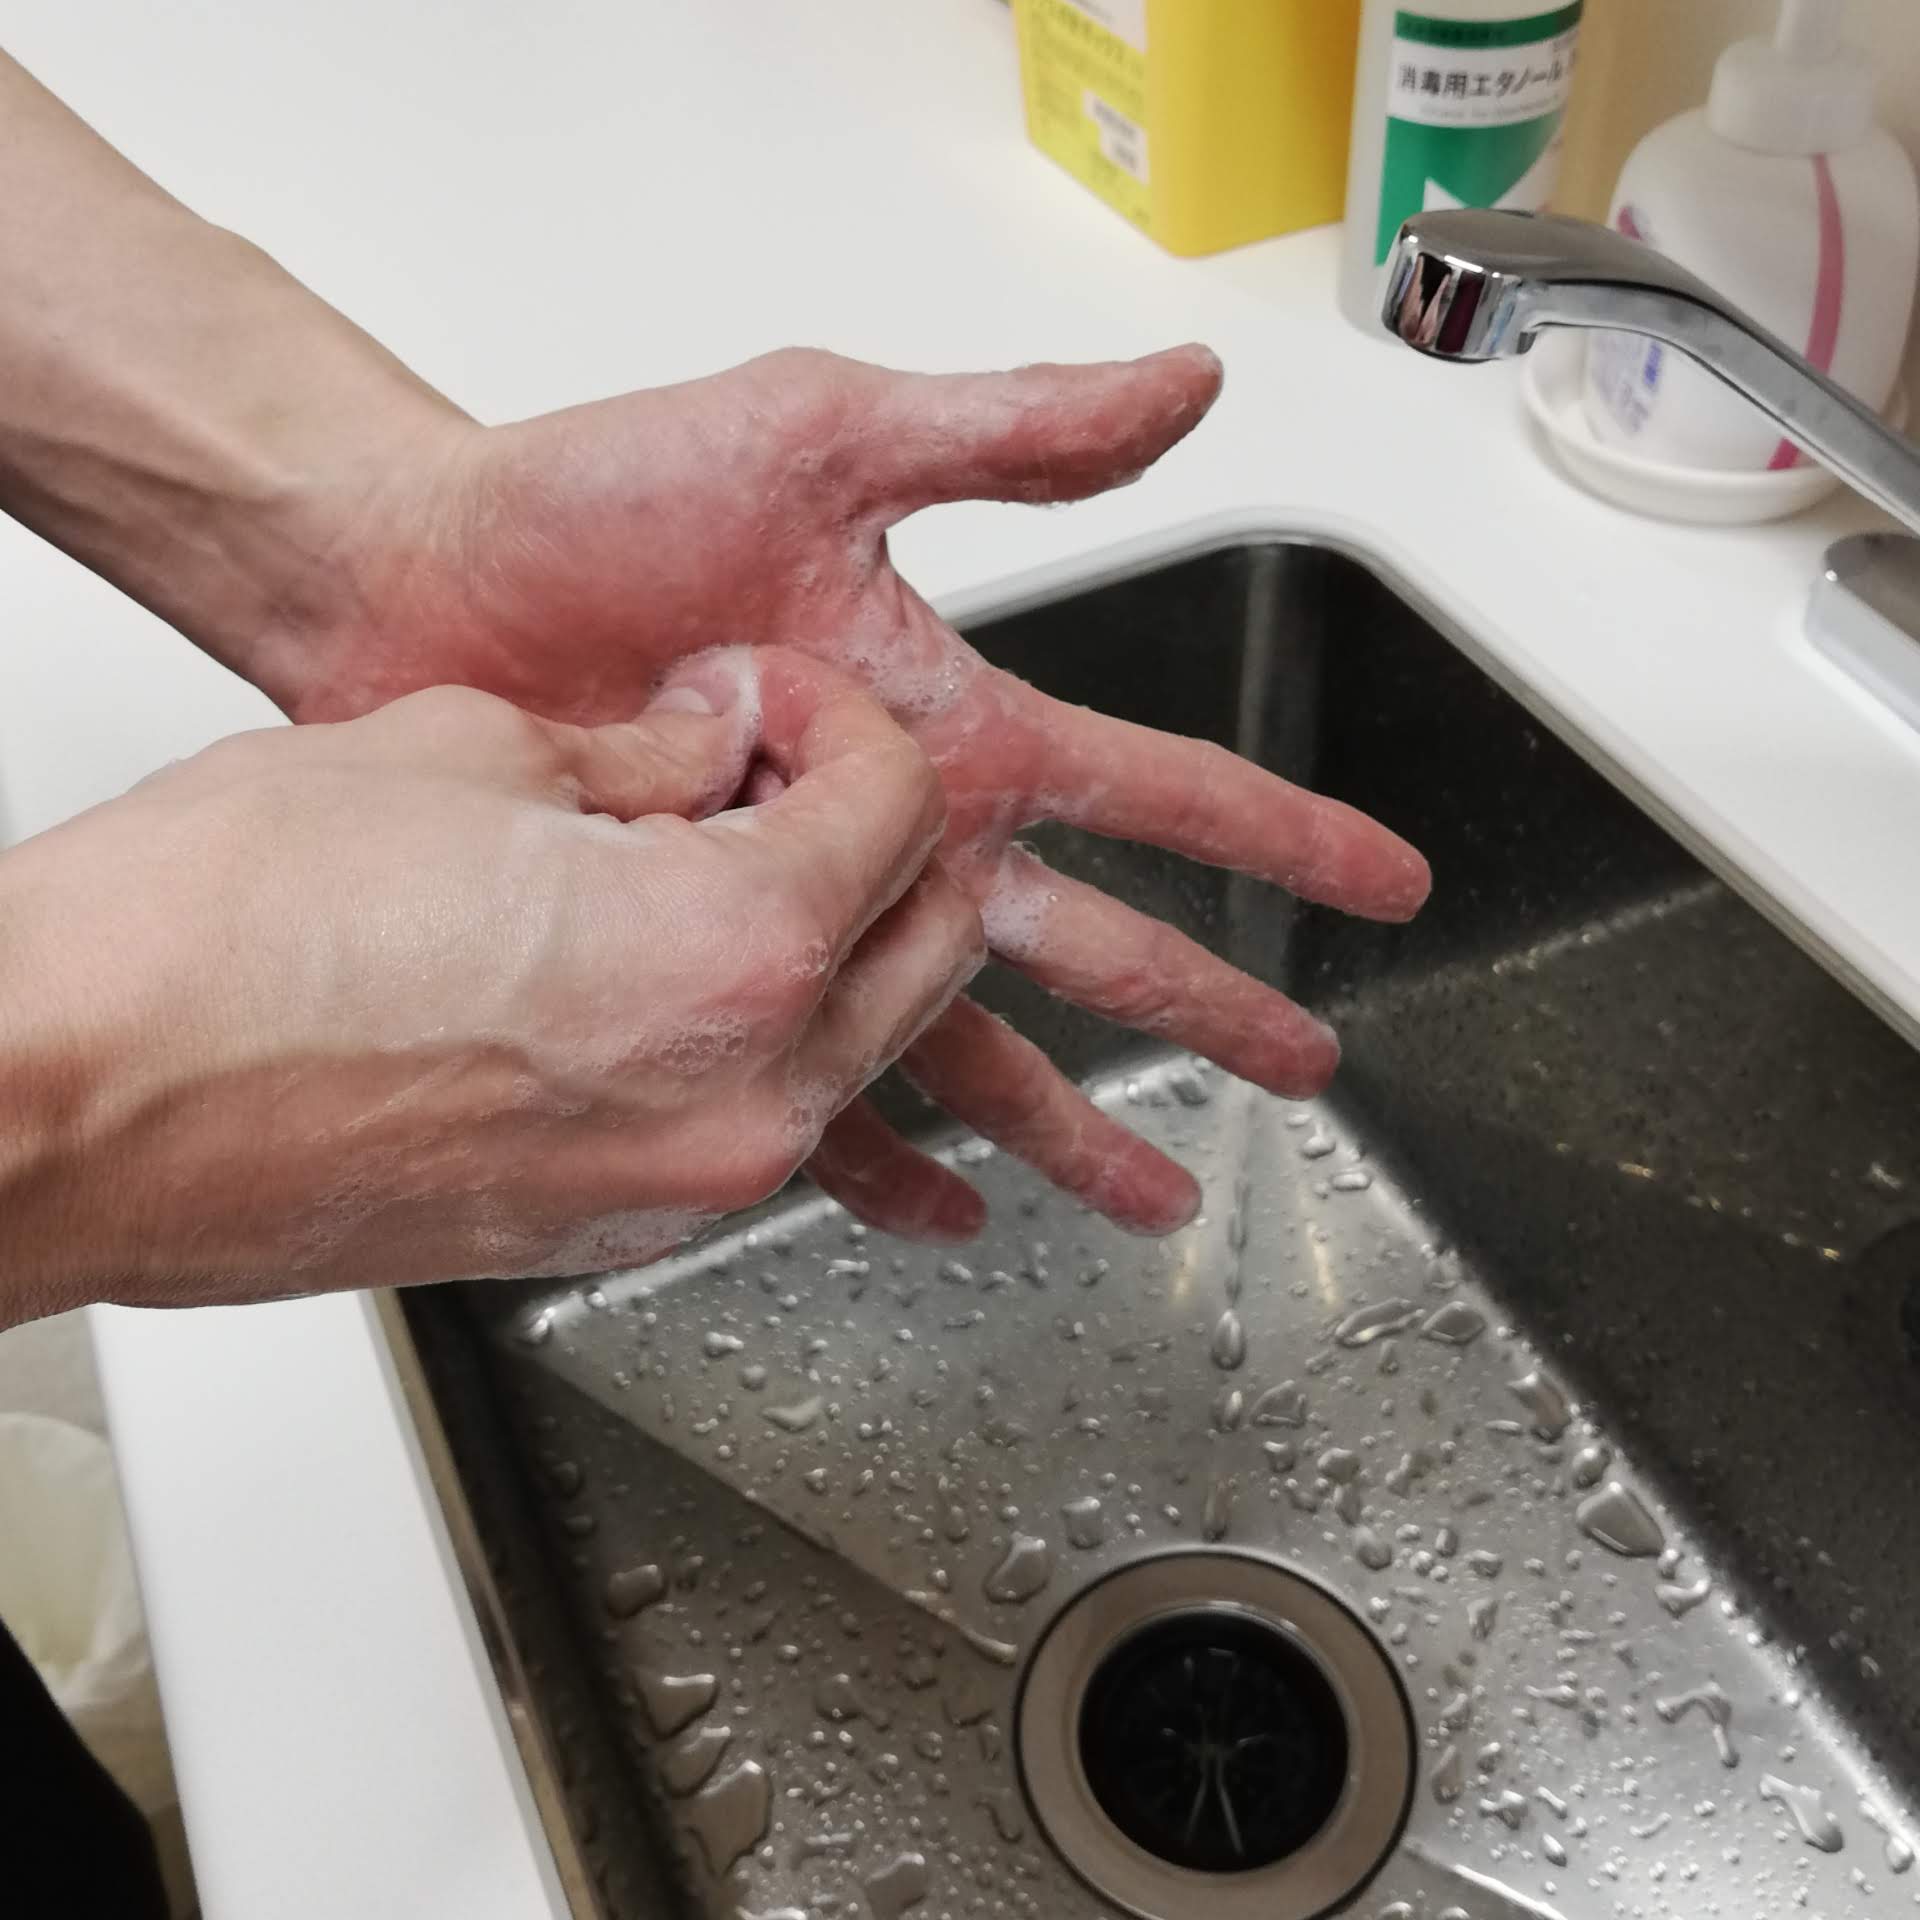 指先を反対の手のひらの上でクルクル動かして洗い、反対の手も同様にする